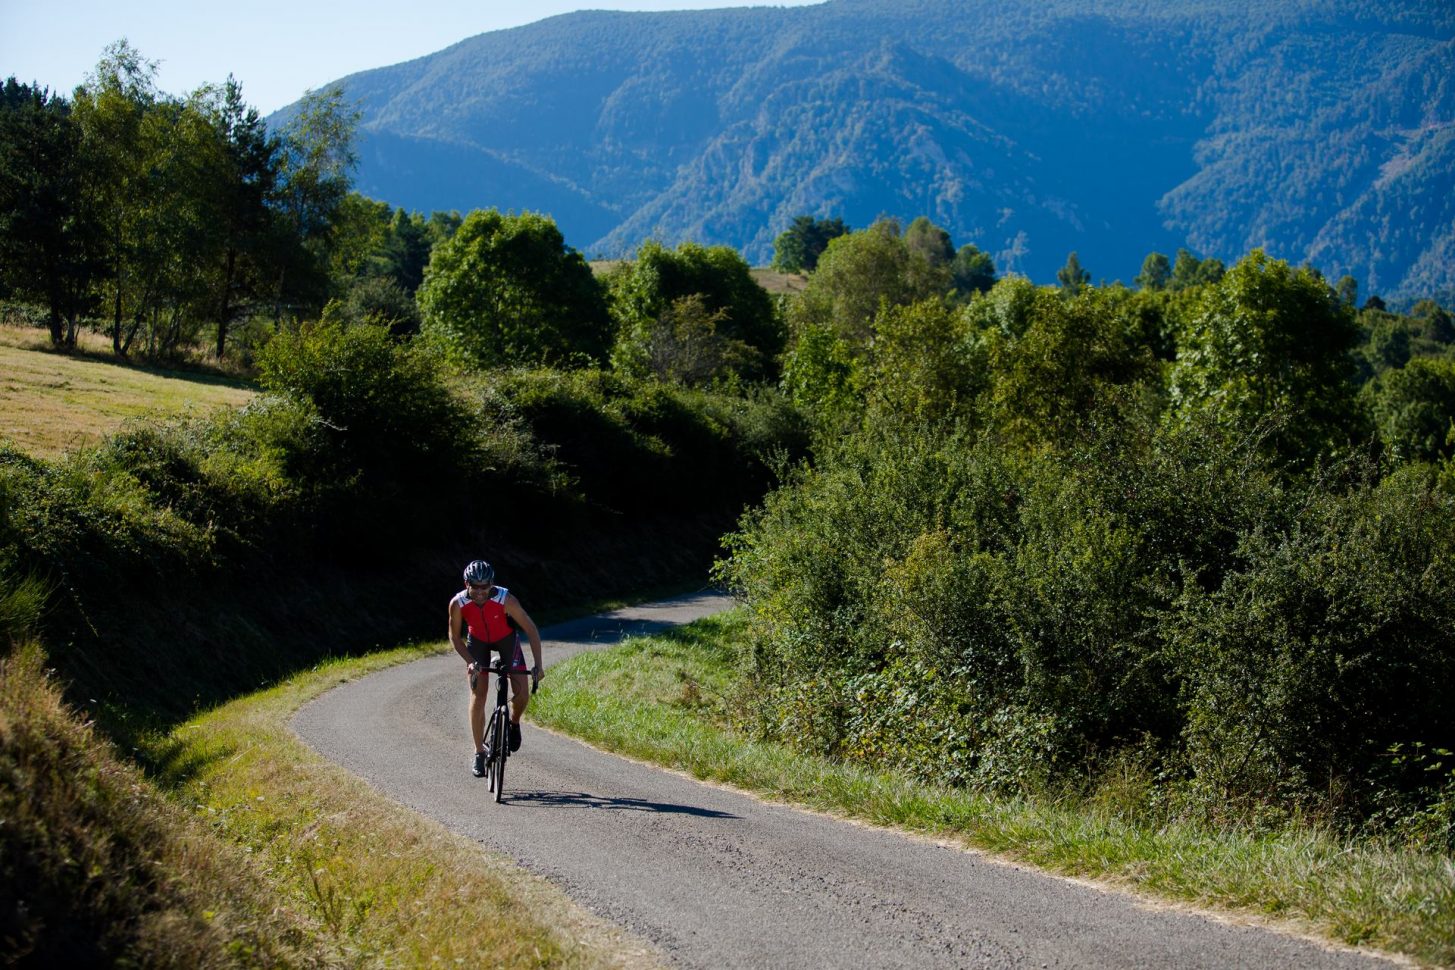 Randonnée vélo sur les routes du Limouxin ©Raphael Kann, OT Limouxin, Pyrénées audoises